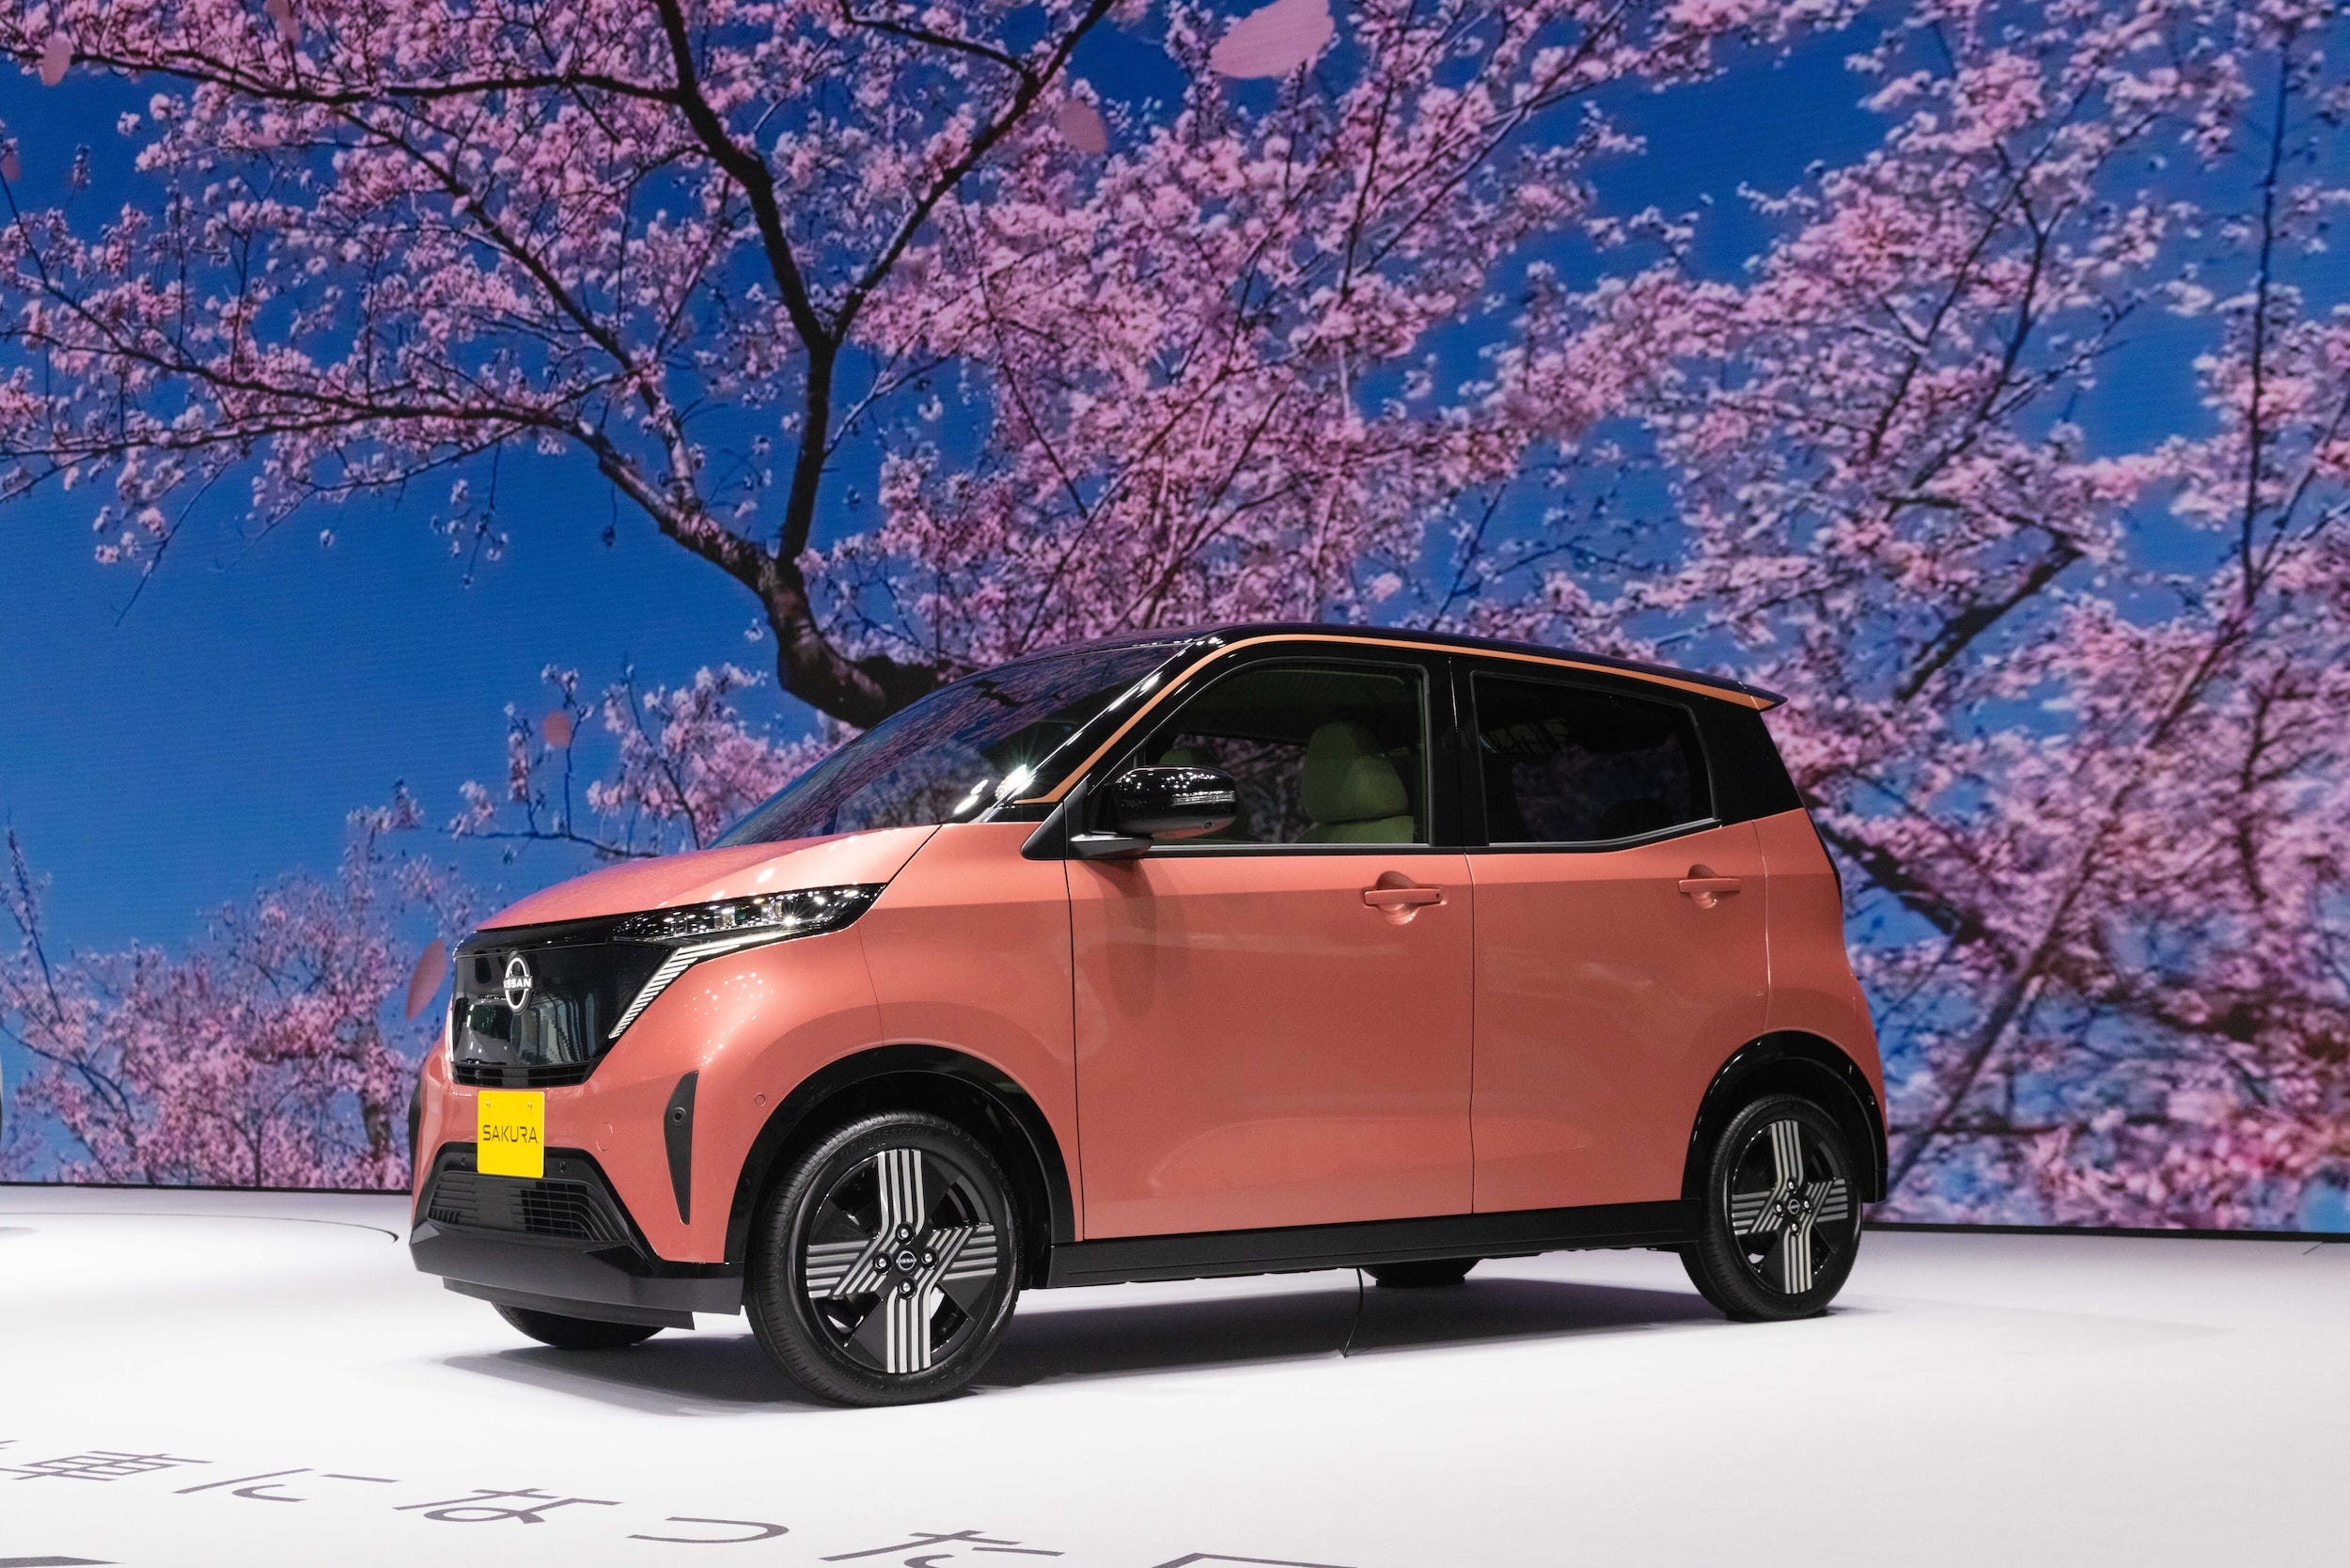 Nissan Sakura